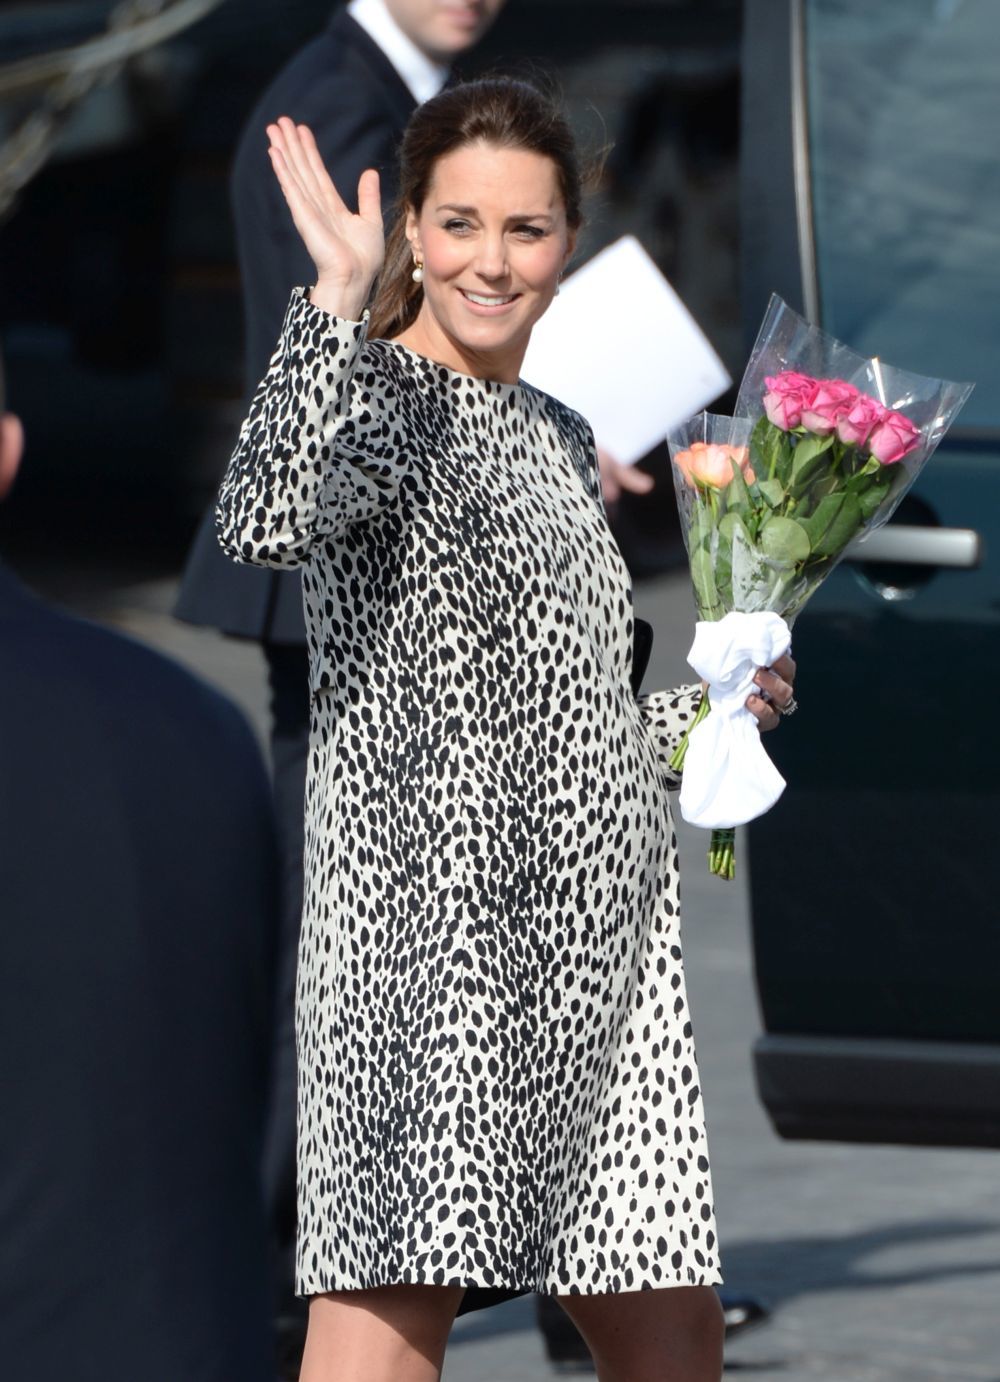 Kate Middleton arriesgó y acertó con un mini vestido de leopardo...